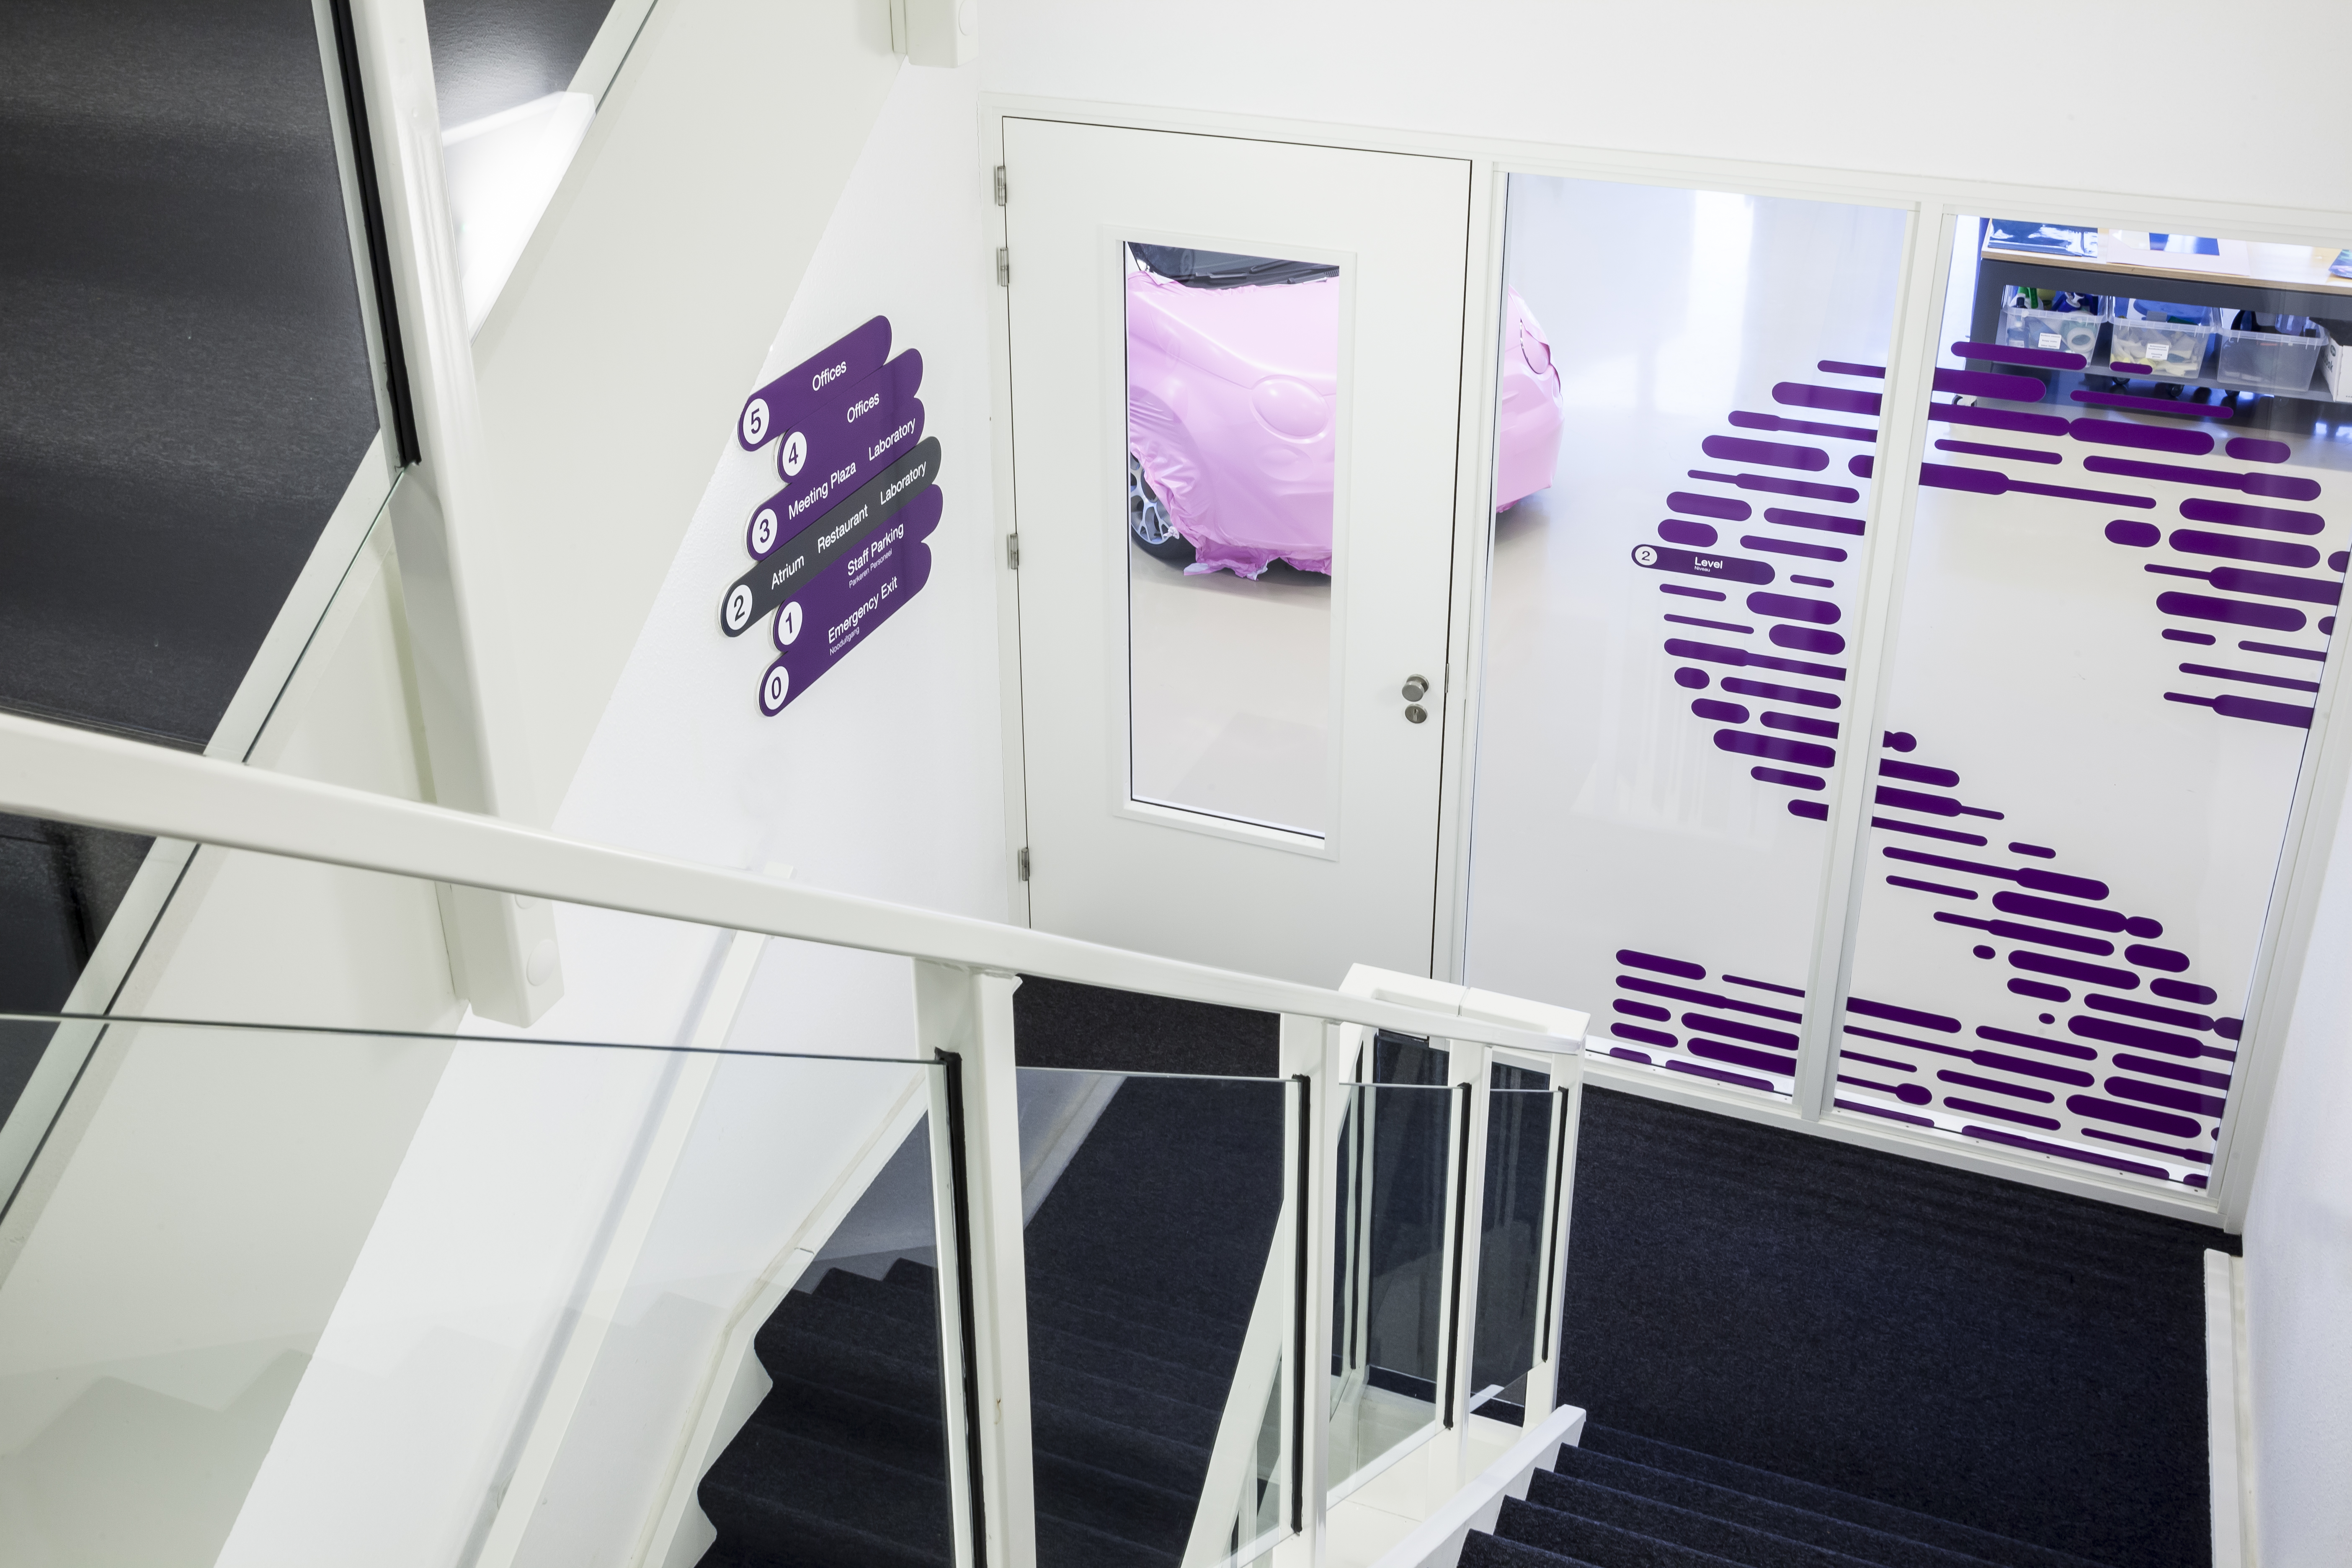 Treppenhaus 2 OG Nummer 2 aus violetten Linien auf Glaswand und Wegweiser